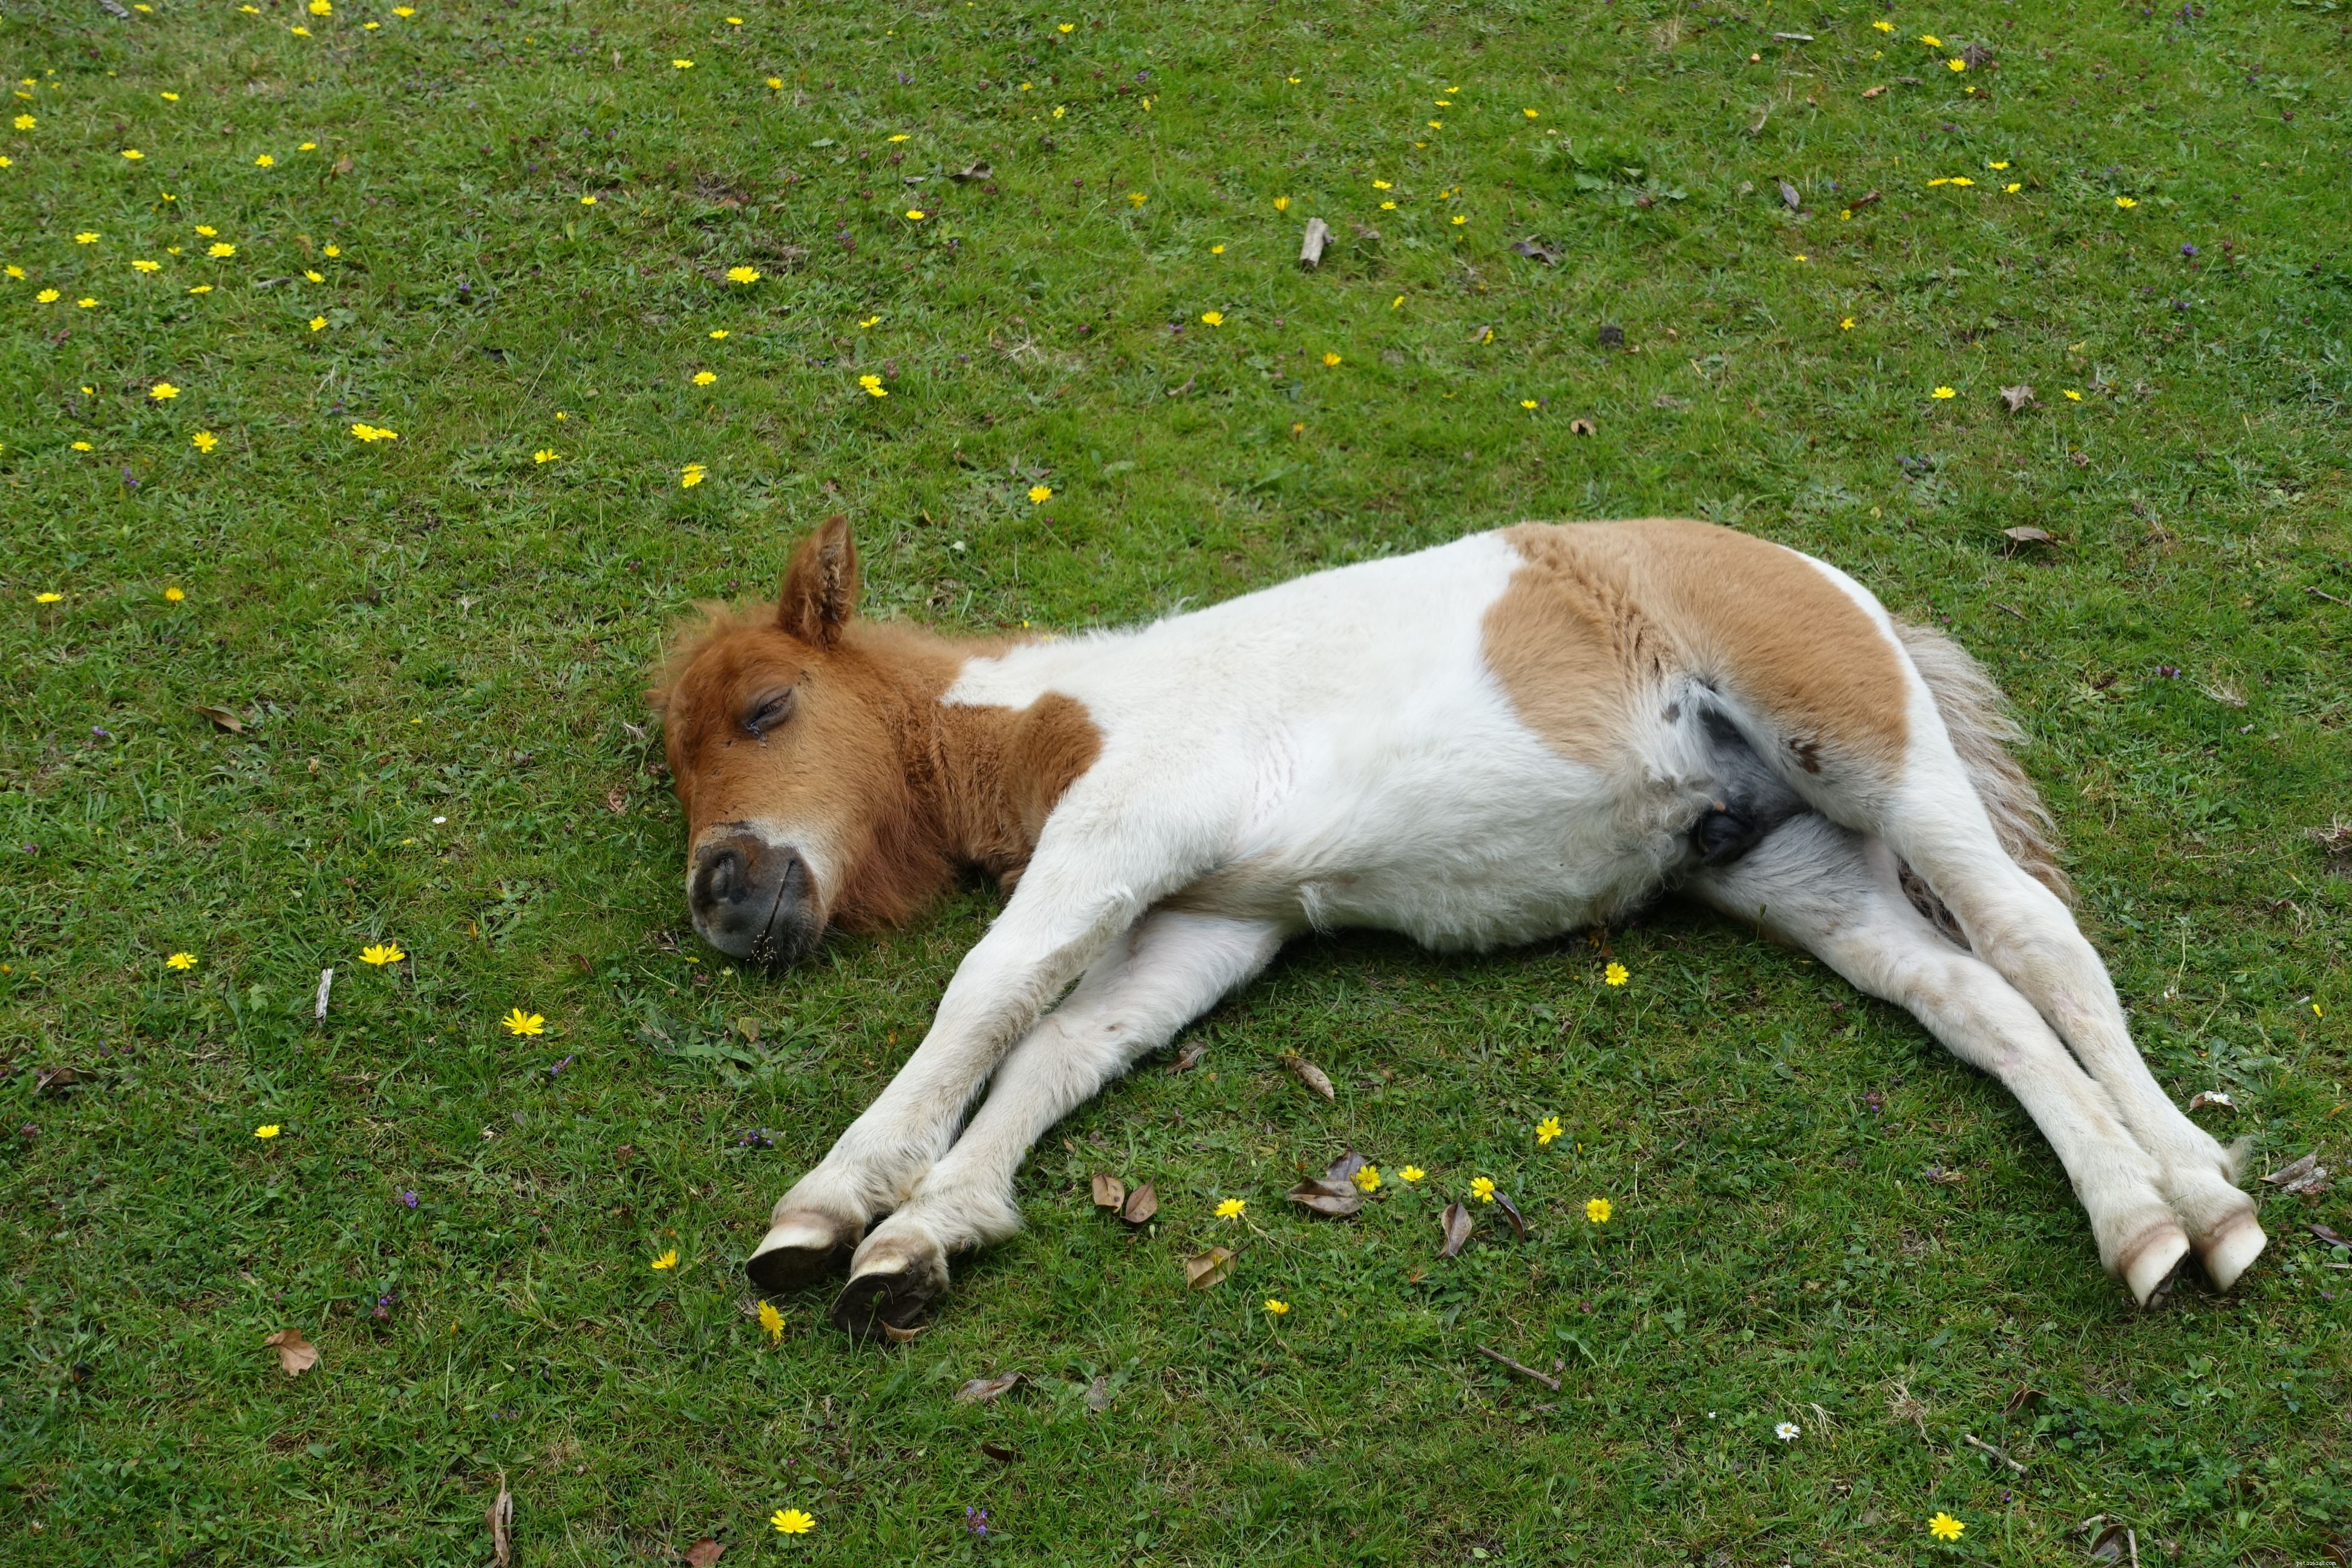 Sai come dormono i cavalli?